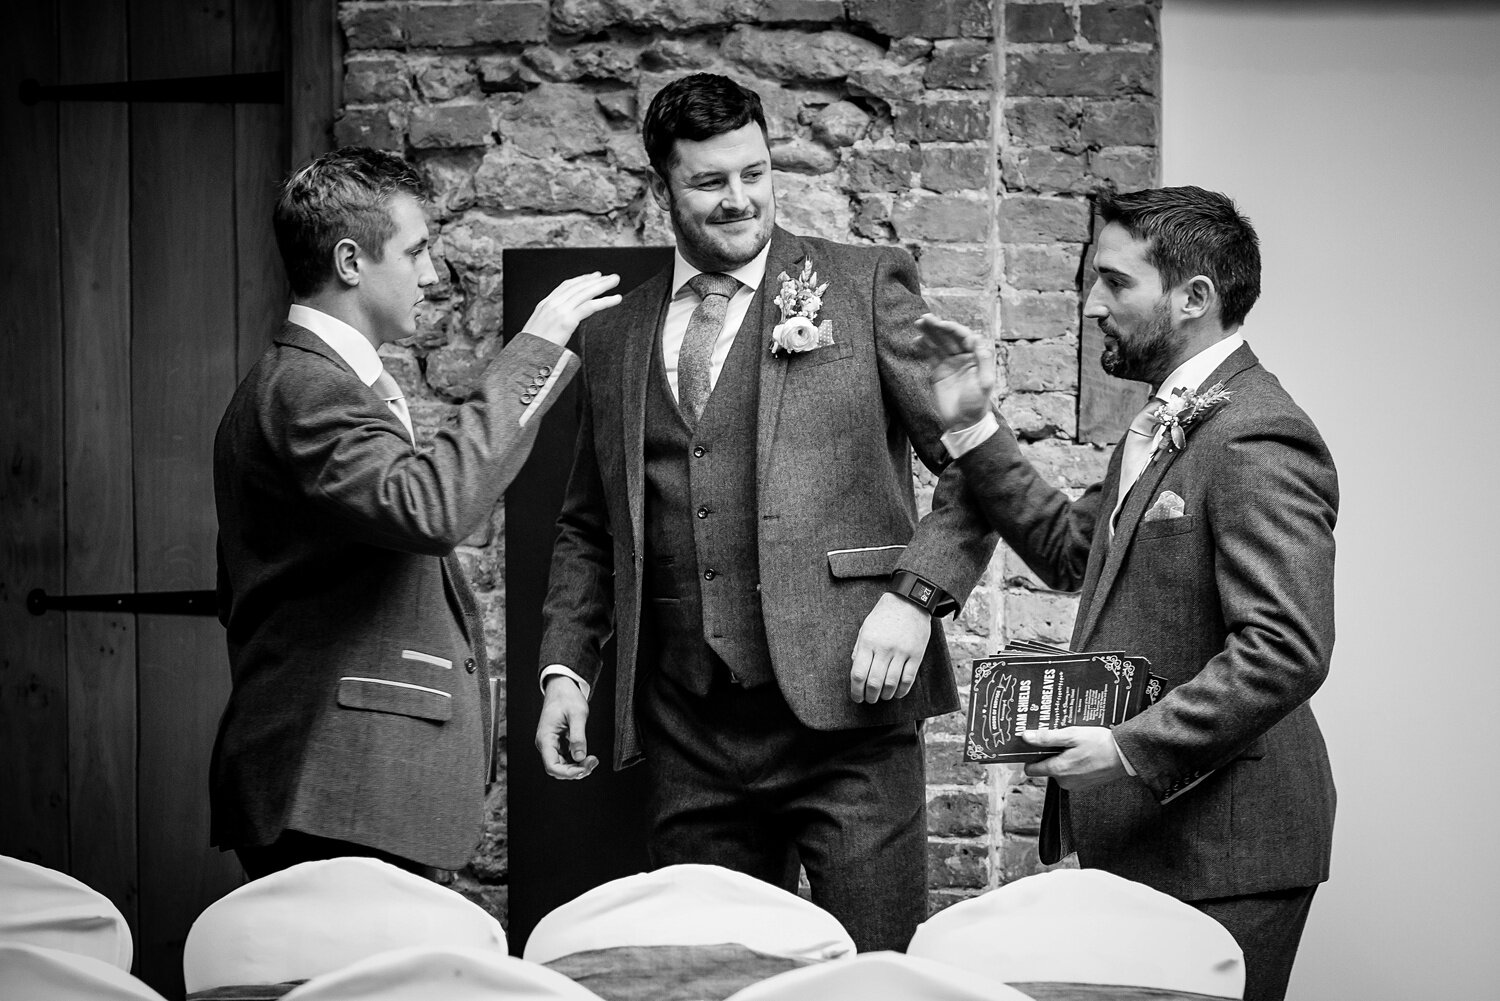 High-fives between groomsmen